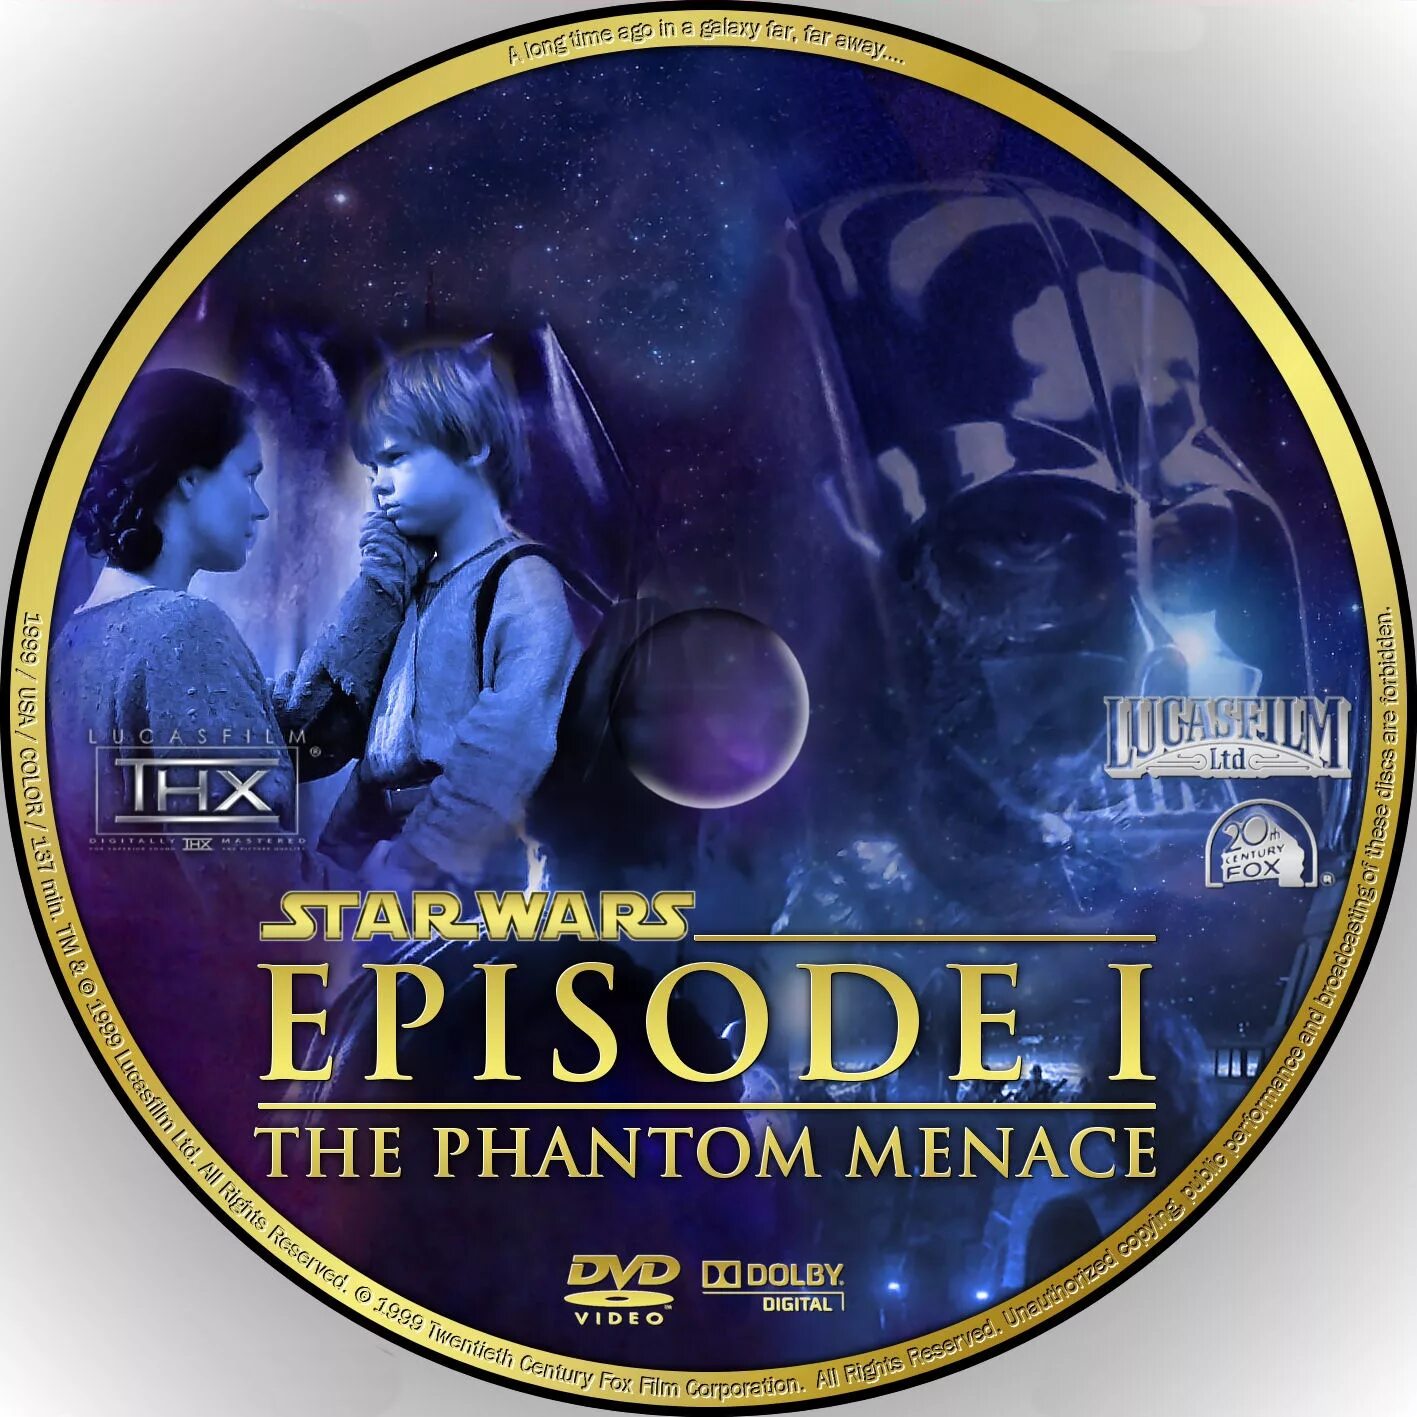 Звездный диск. Звёздные войны эпизод 1 скрытая угроза. Звездные войны эпизод 1 обложка. Звездные войны эпизод 1 DVD. Звёздные войны DVD.